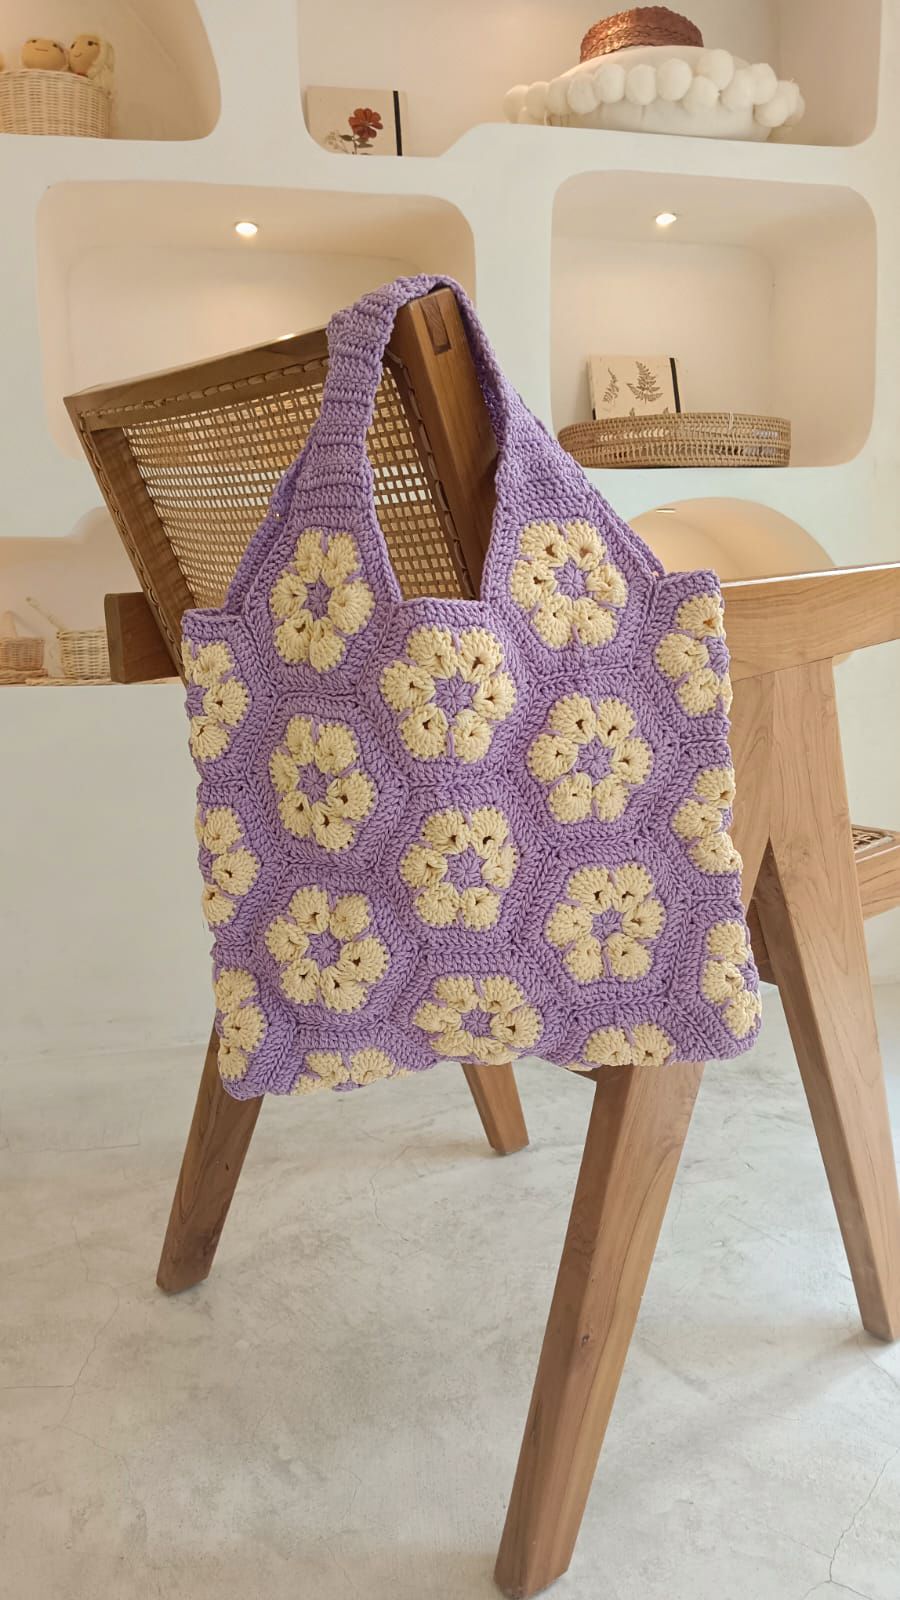 Flower Crochet Shoulder Bag